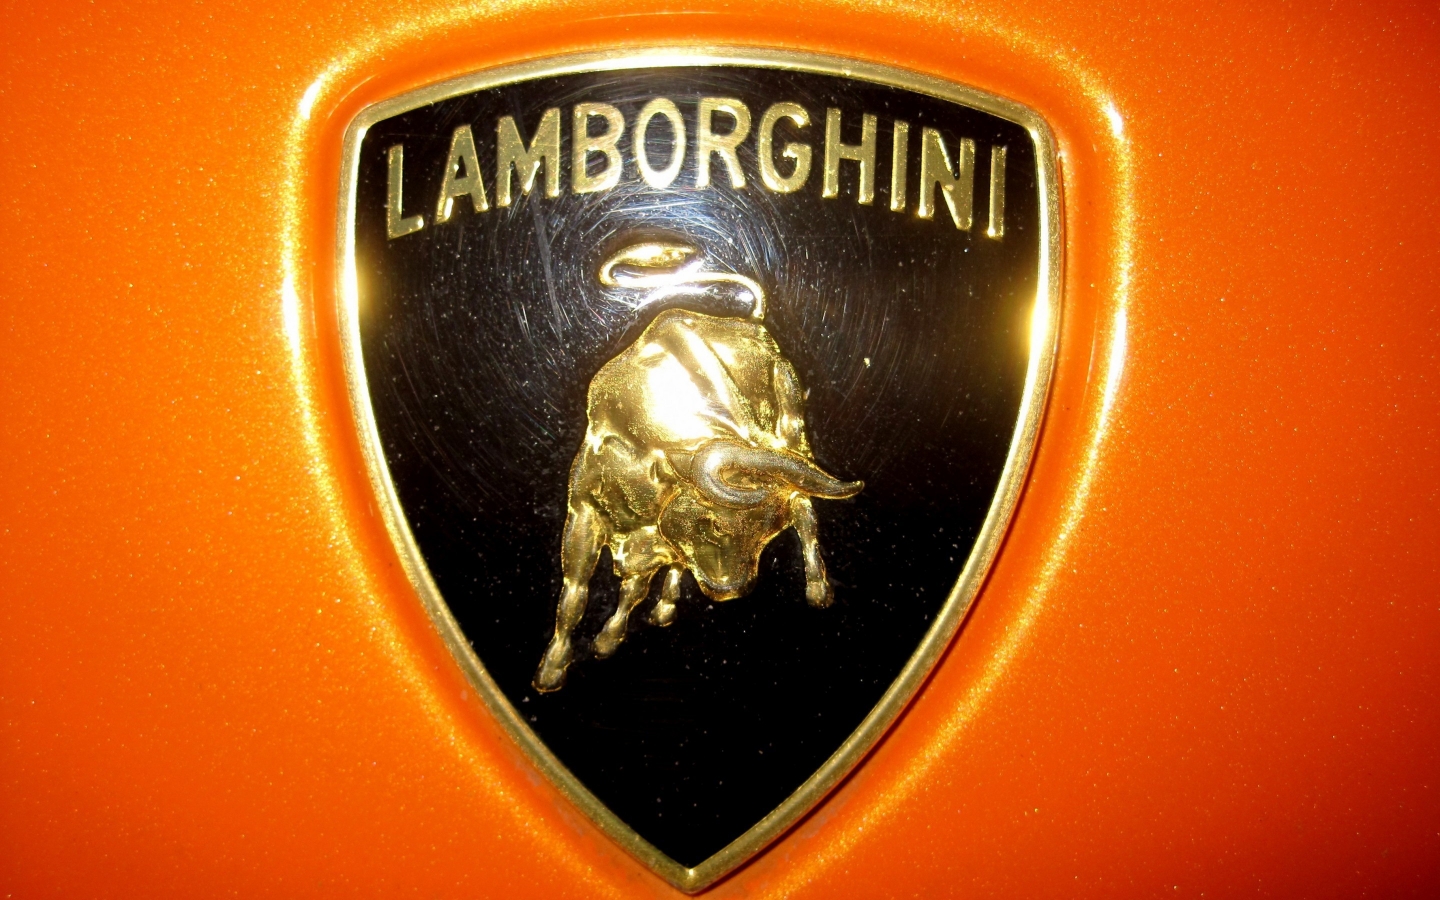 Lamborghini logo for 1440 x 900 widescreen resolution